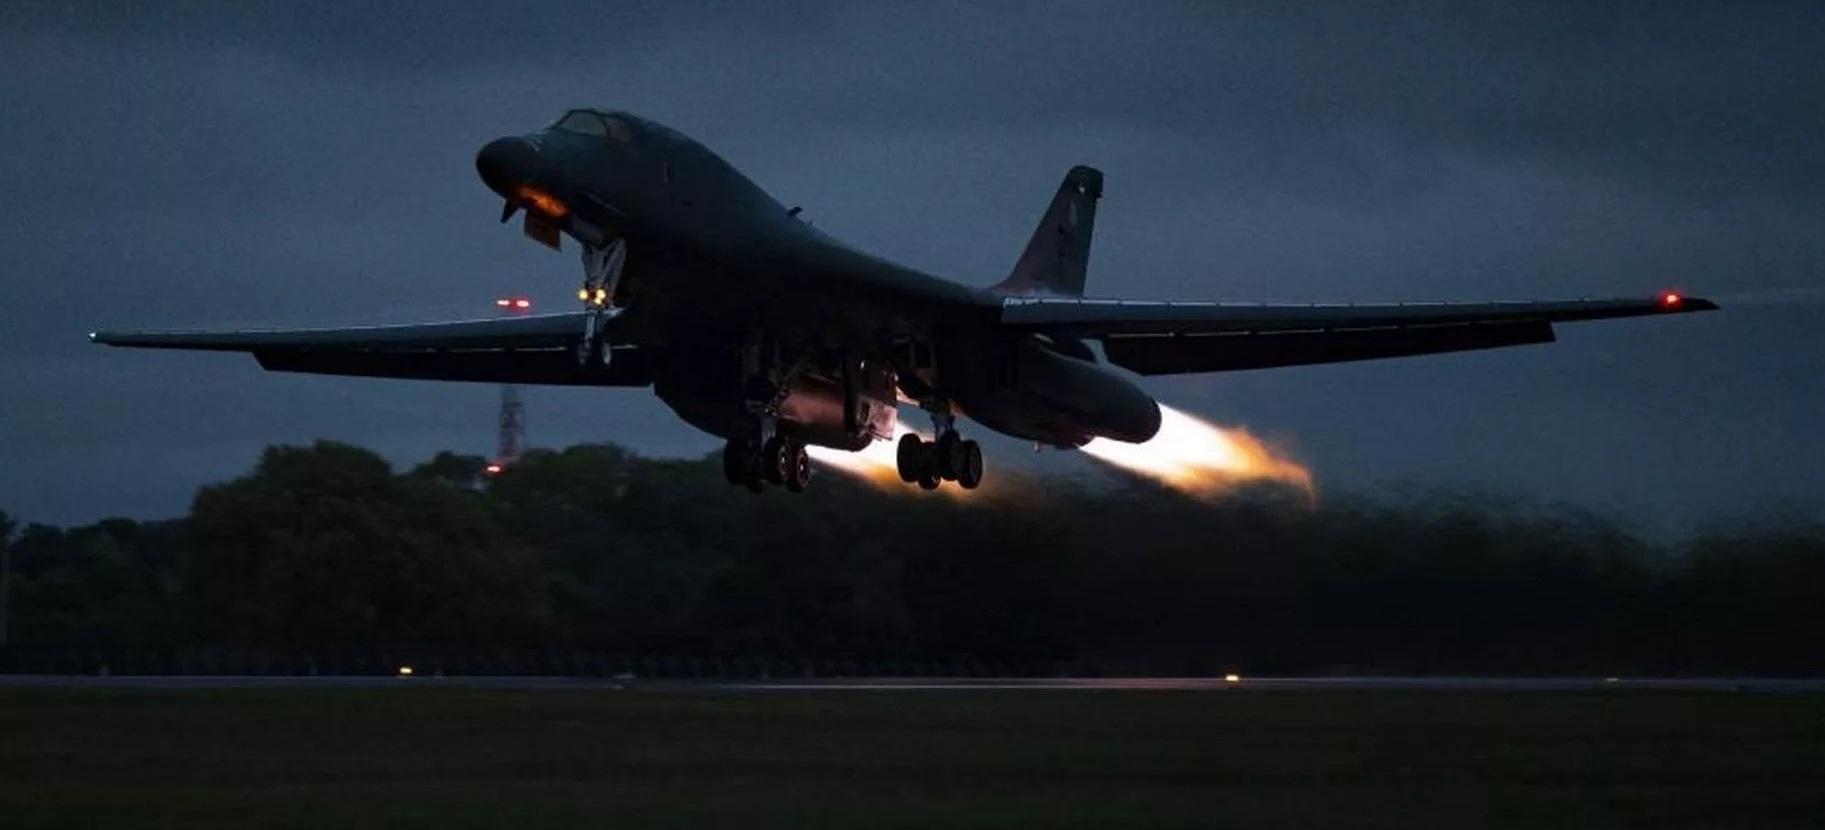 Αντίποινα από ΗΠΑ: Μαζικοί βομβαρδισμοί κατά στόχων του Ιράν σε Ιράκ και Συρία – Στον αέρα B-1B και F-15E